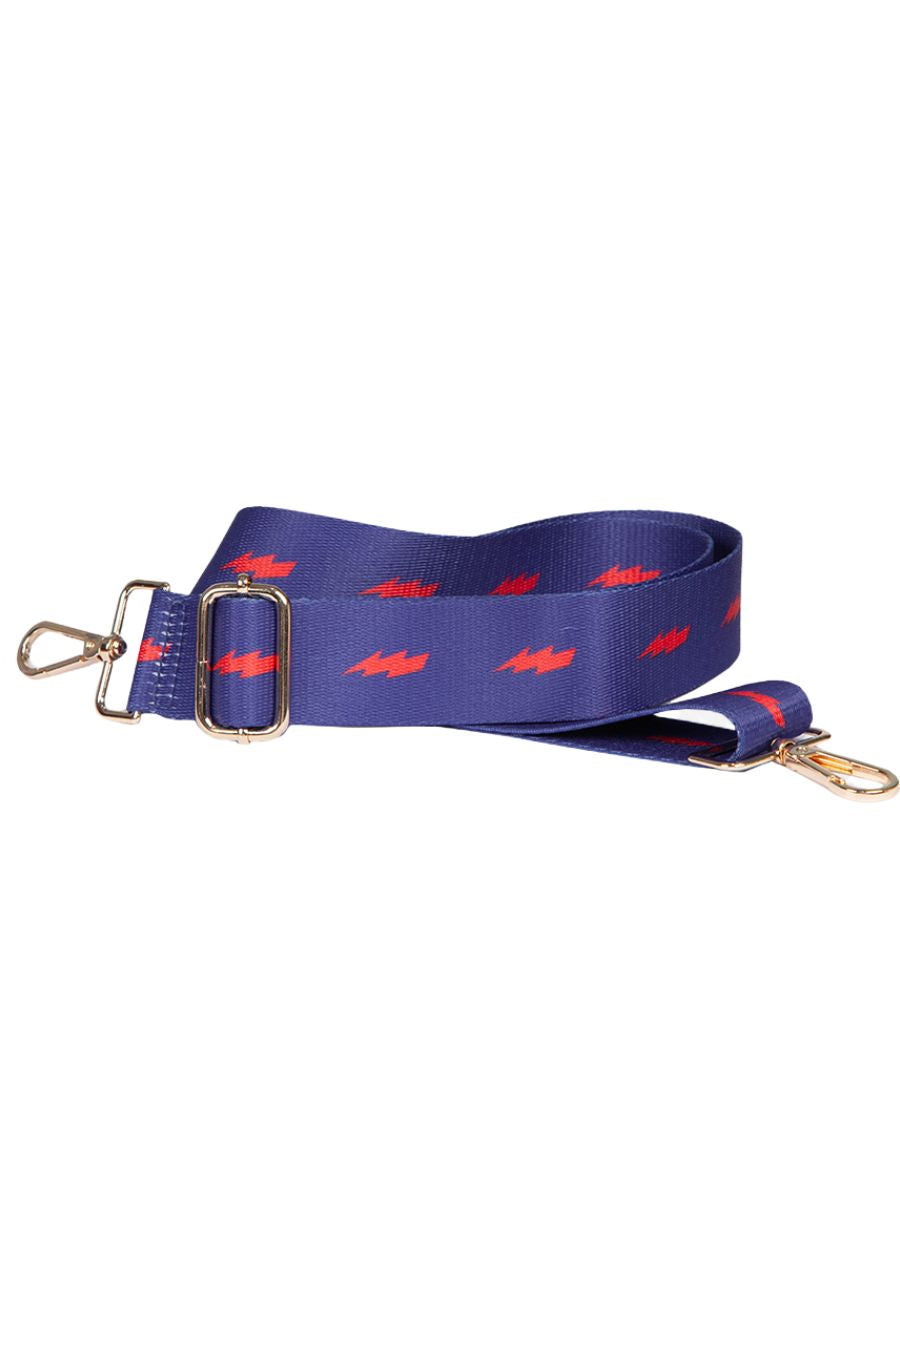 blue and red thunder bolt bag strap